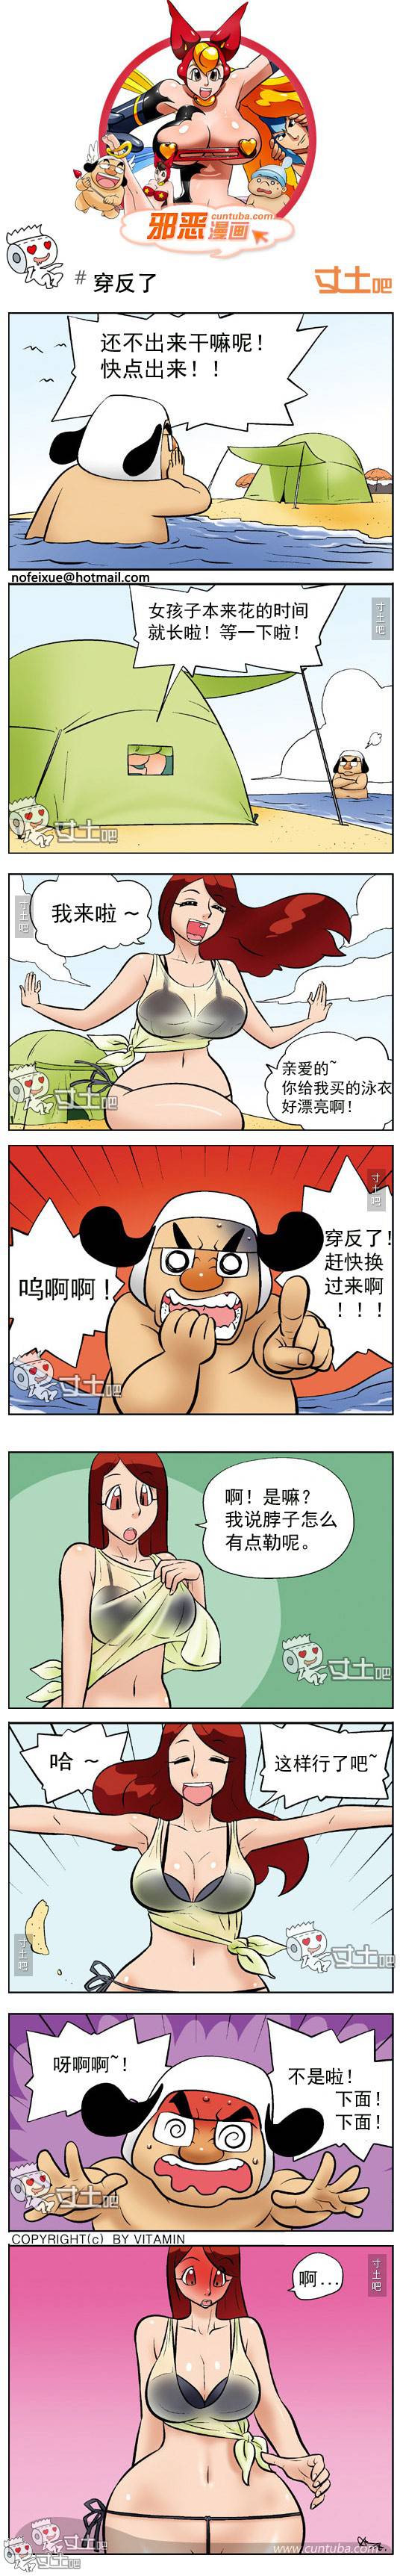 邪恶漫画爆笑囧图第259刊：穿反的裤子